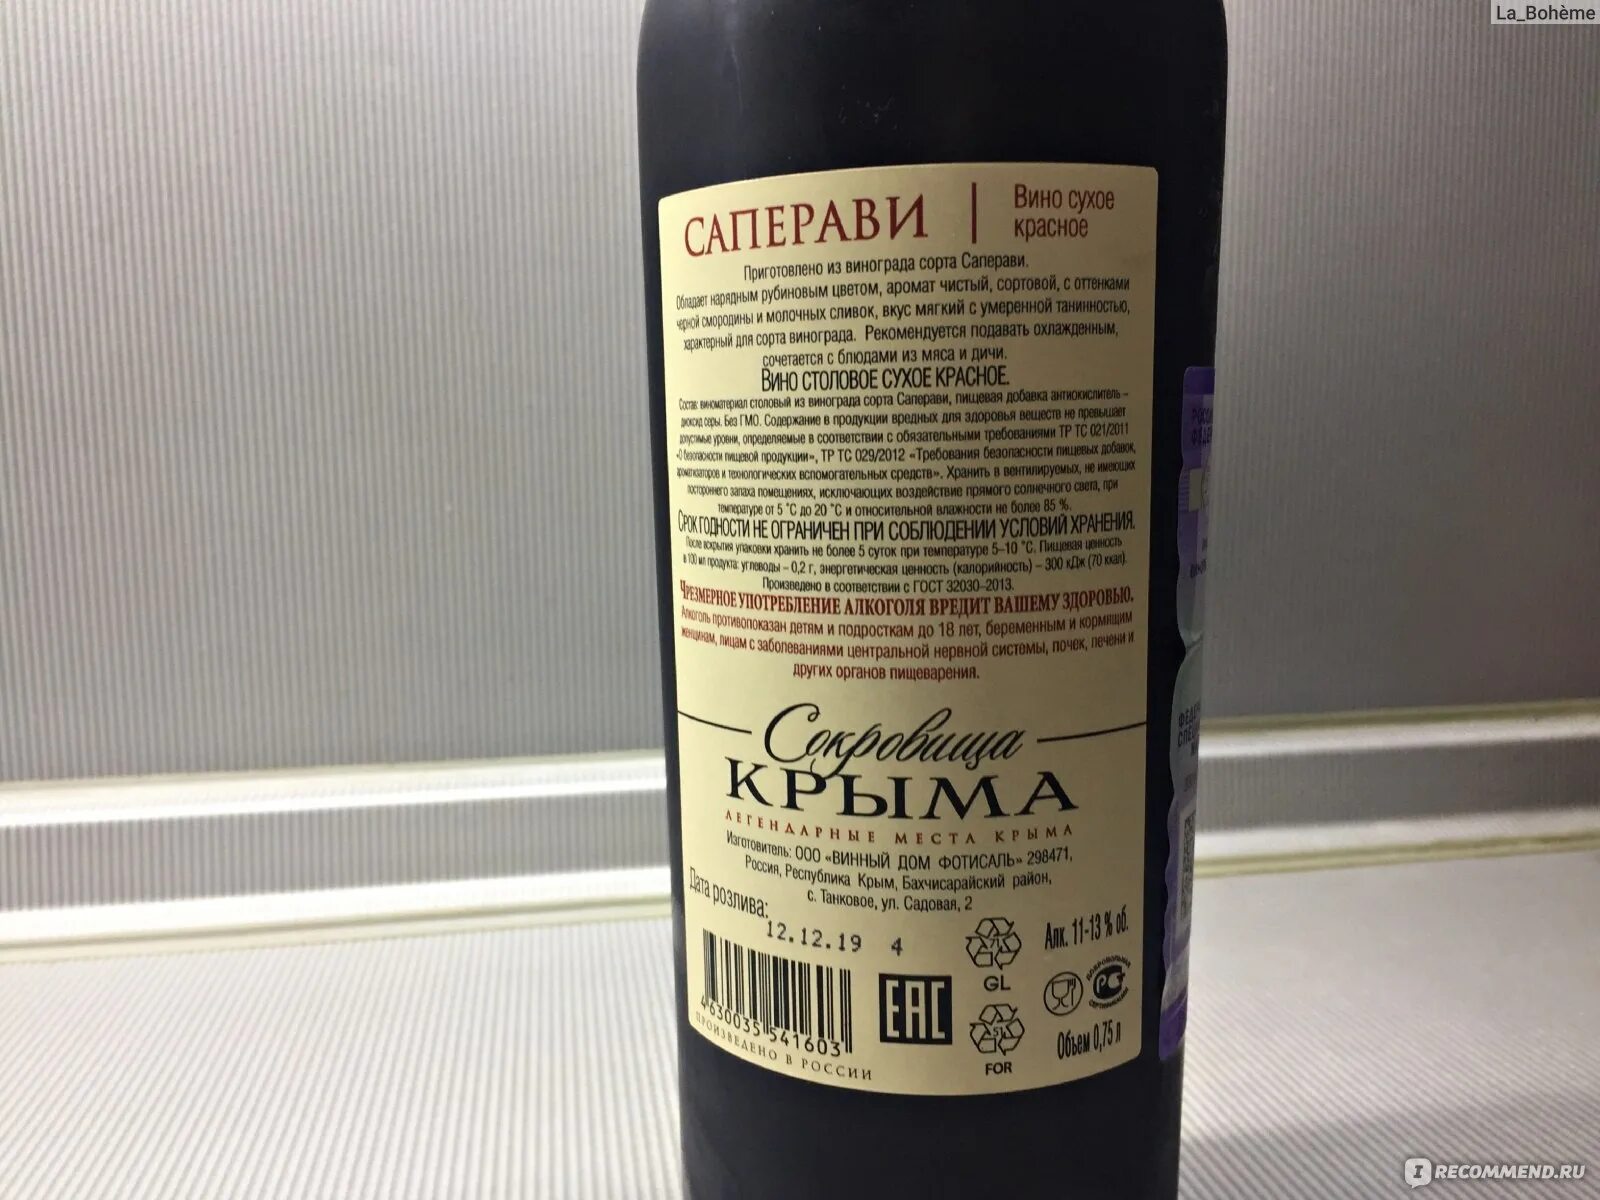 Купить вино саперави красное сухое. Вино Саперави красное сухое. Вино Крымское Саперави Саперави красное сухое. Грузинское вино Саперави красное сухое. Вино Саперави красное сухое Крым.